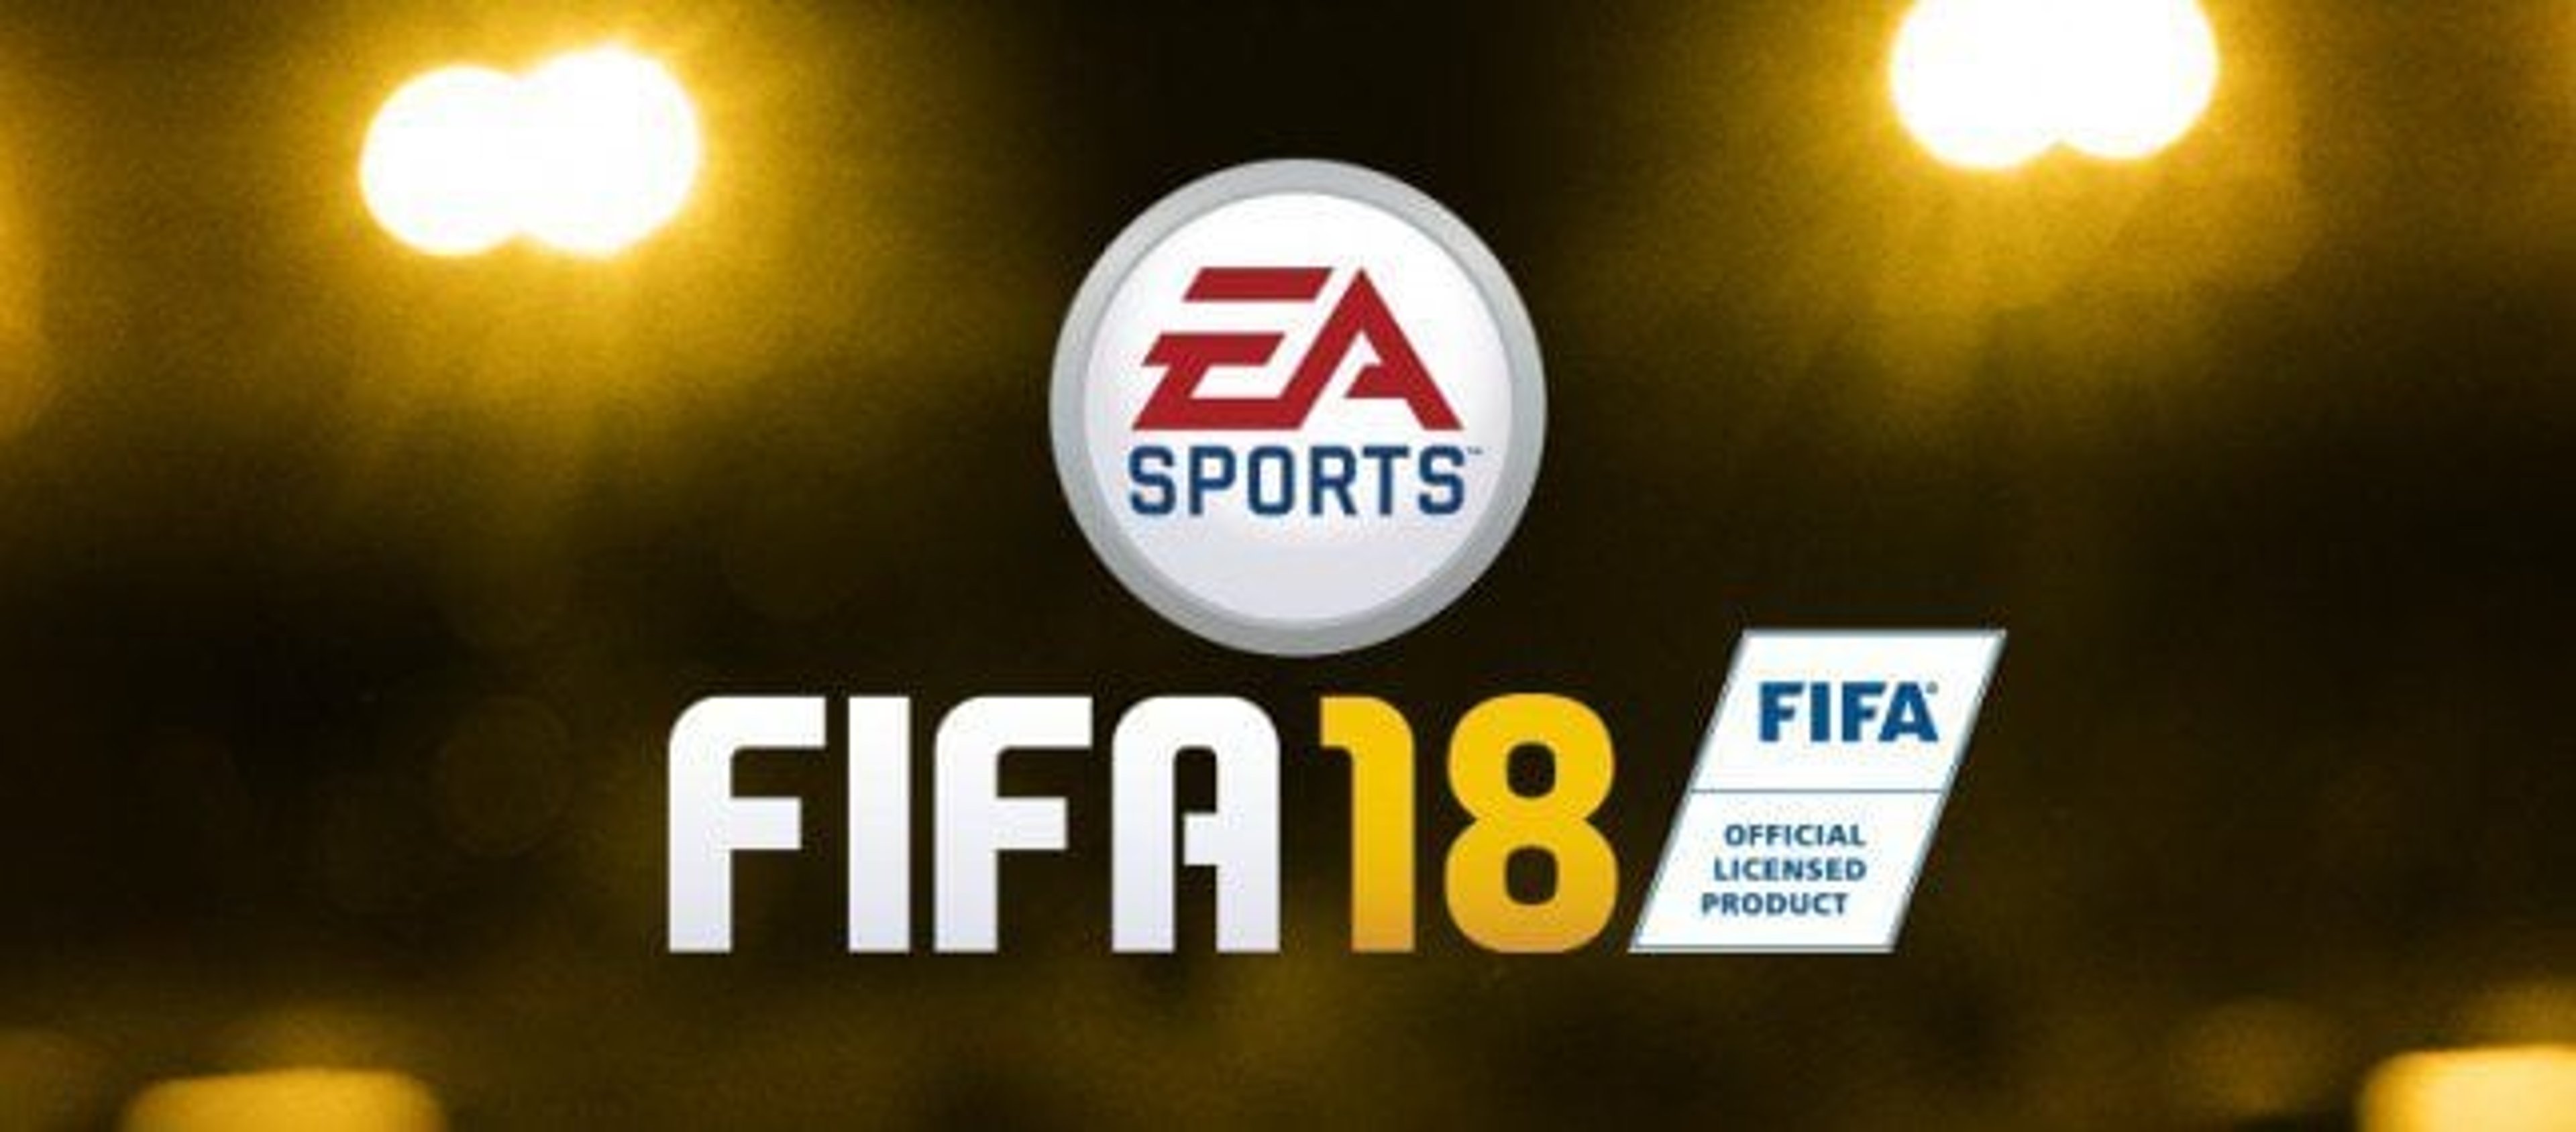 FIFA 18: Ecco il trailer ufficiale, dettagli e data di uscita!